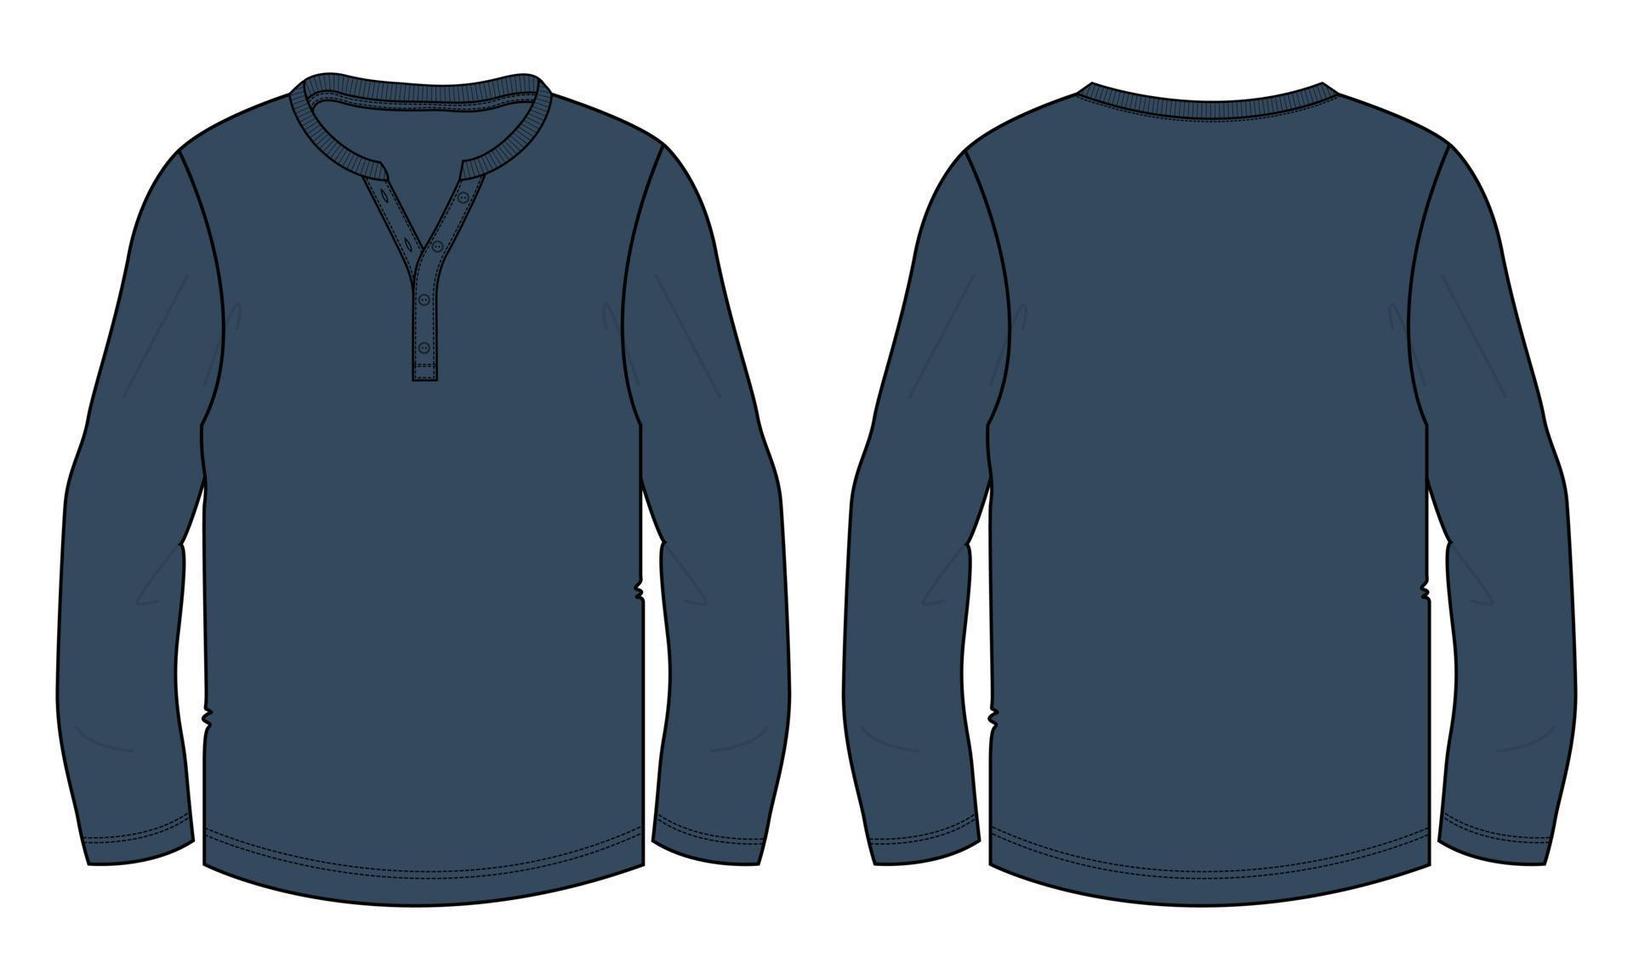 camiseta de manga longa técnica de moda desenho plano ilustração vetorial modelo de modelo de cor azul marinho vistas frontal e traseira vetor